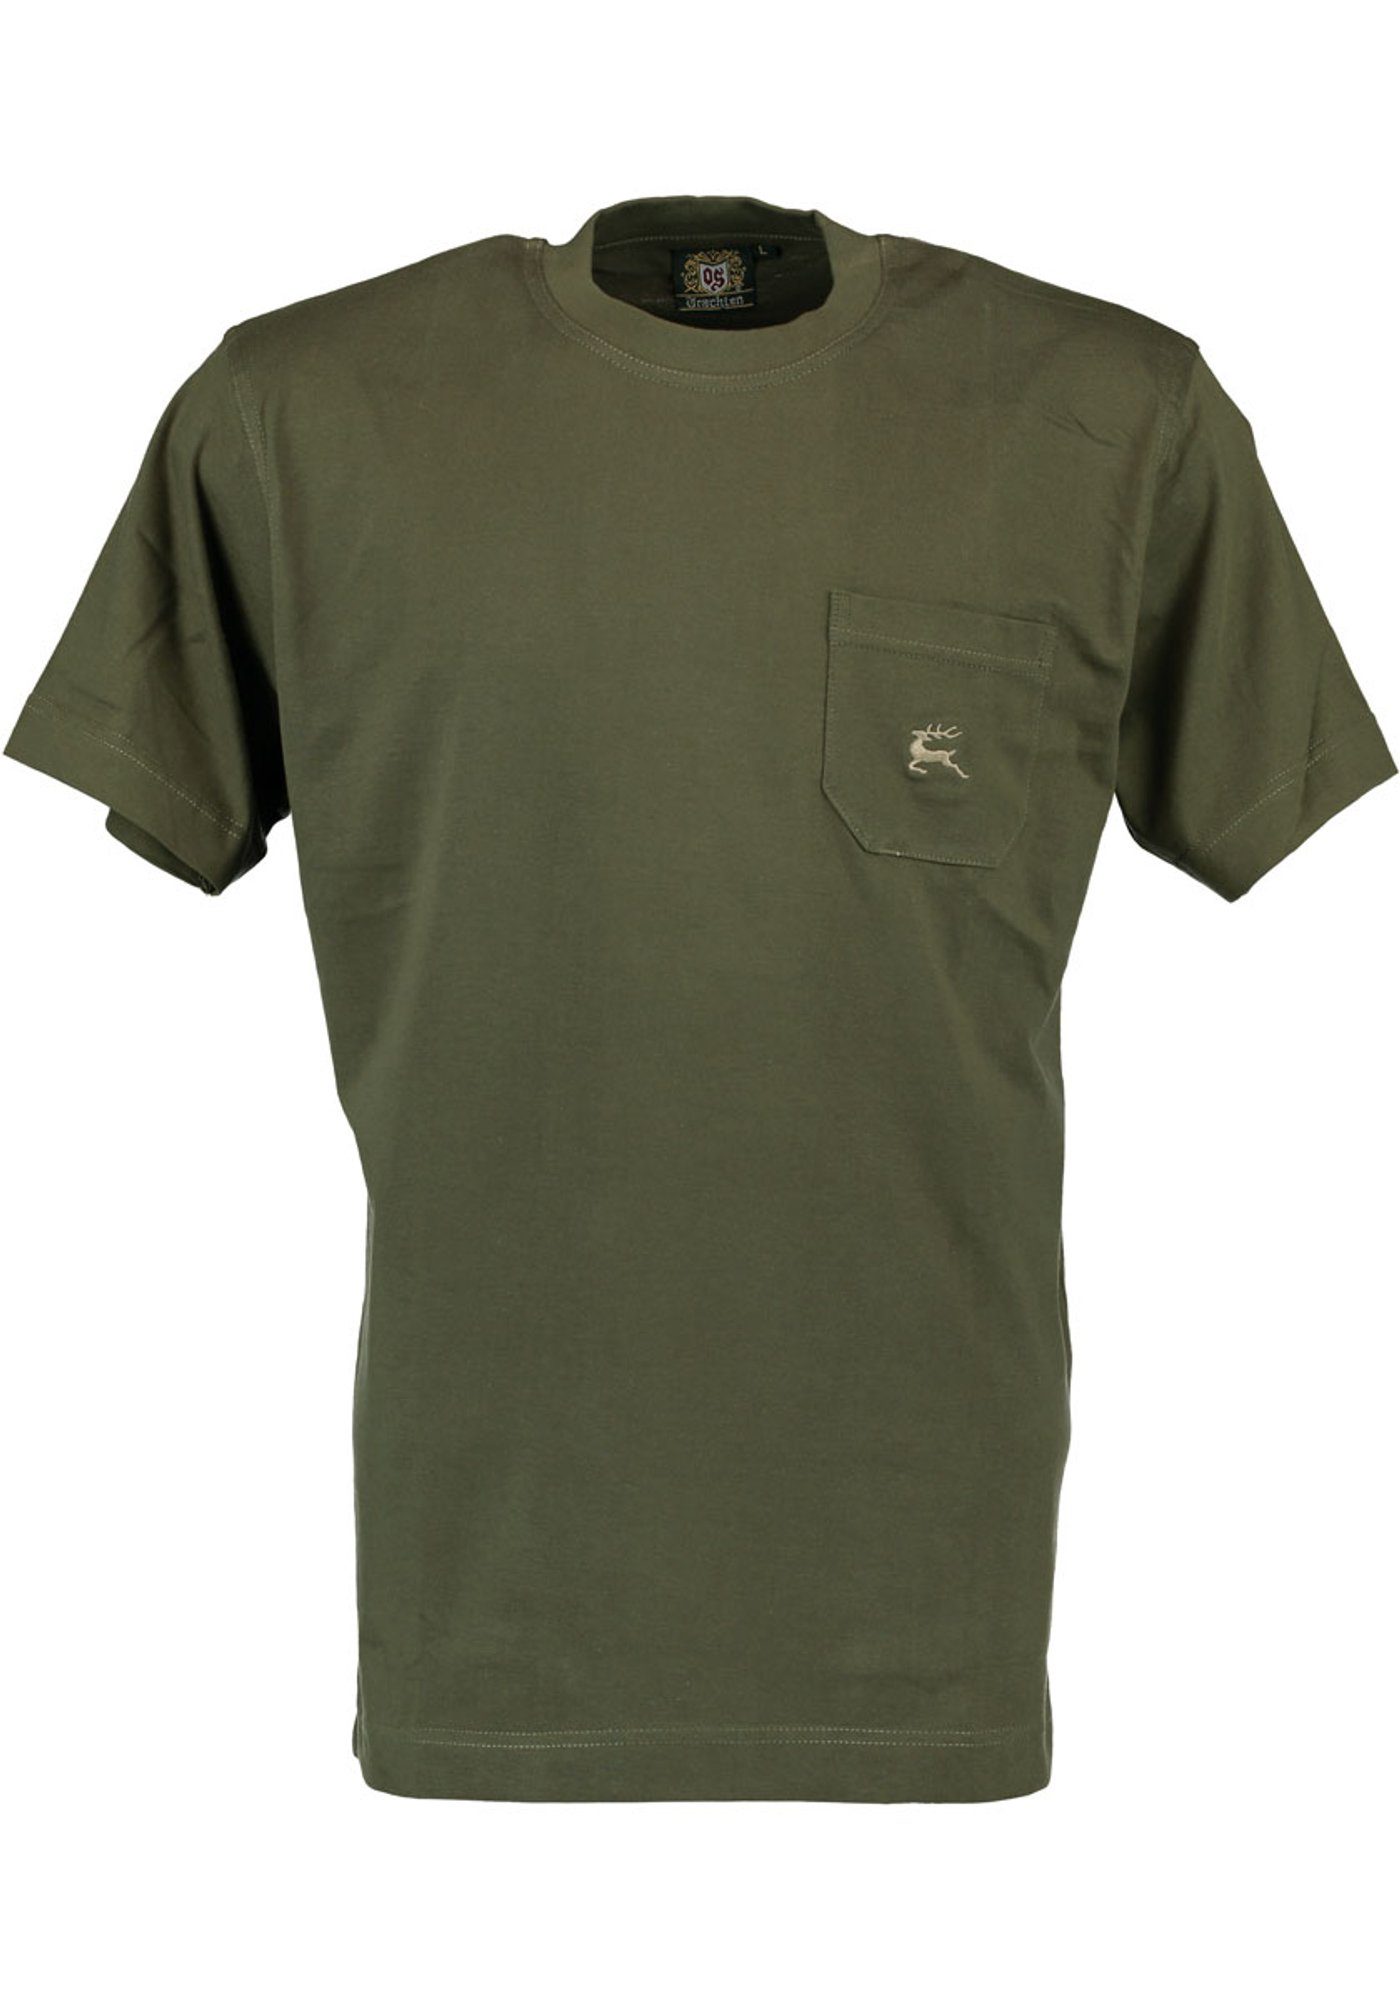 auf T-Shirt Herren OS-Trachten Najio oliv der mit Kurzarmshirt Hirsch-Stickerei Brusttasche